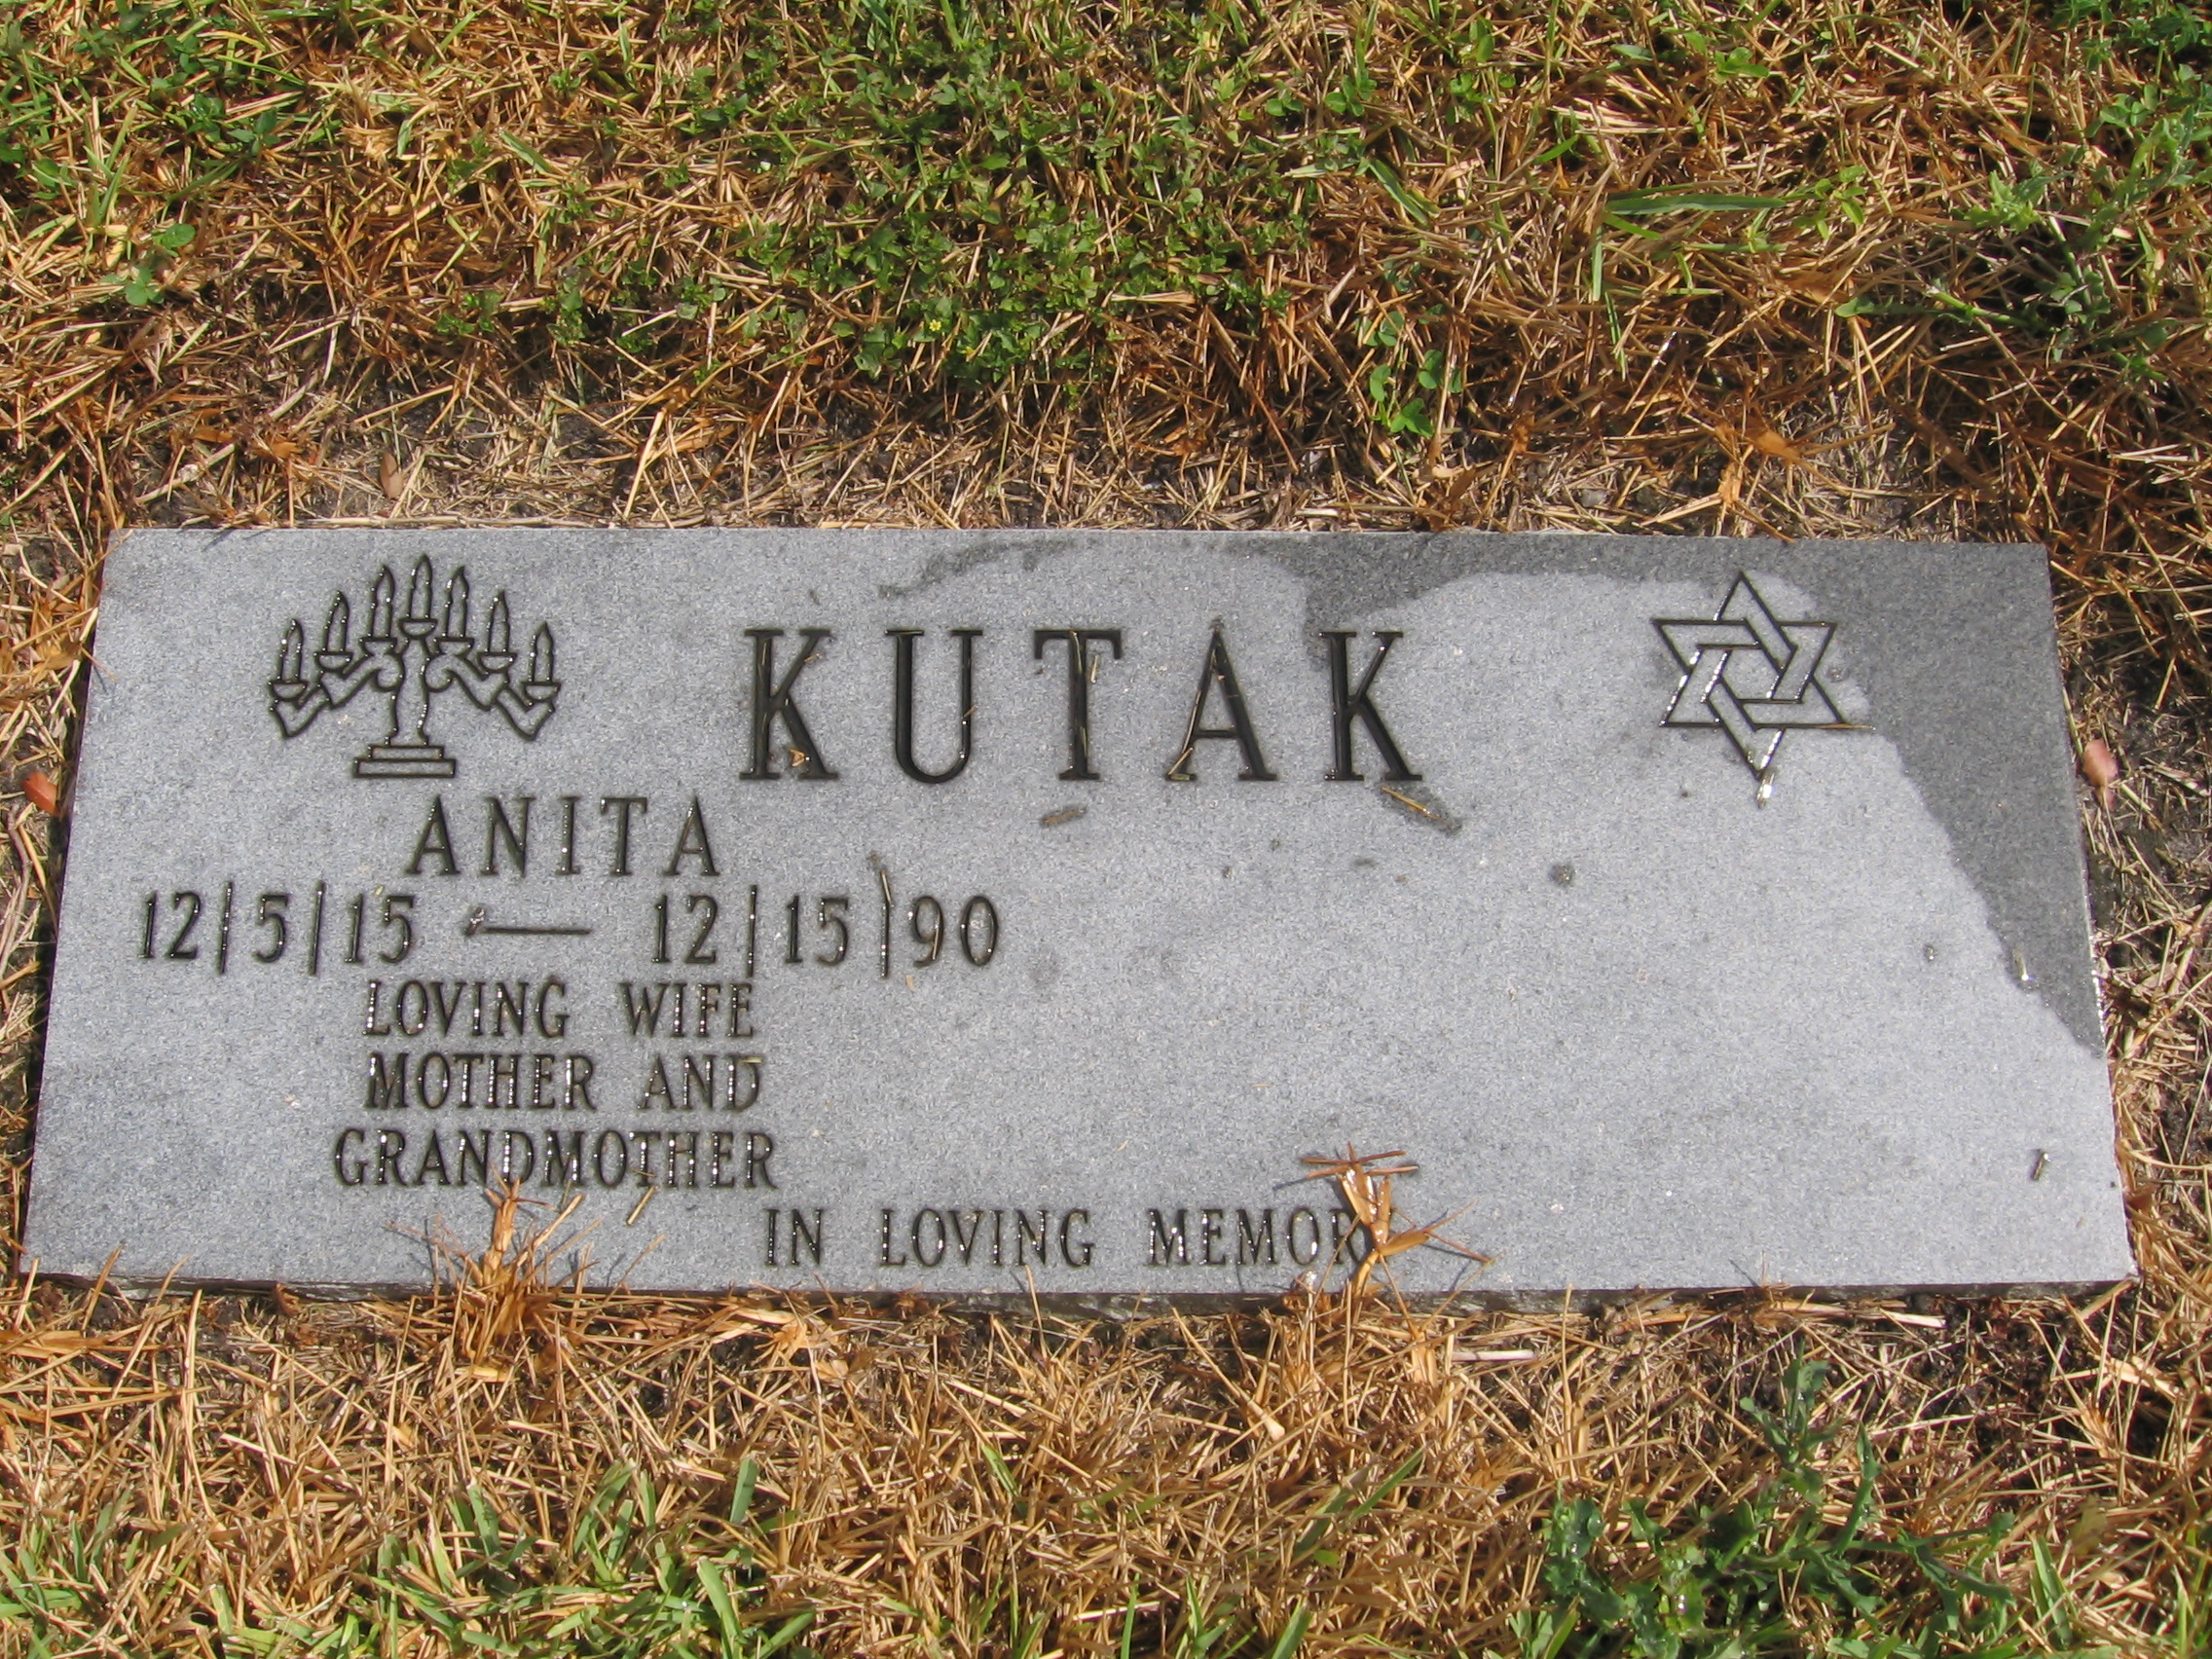 Anita Kutak